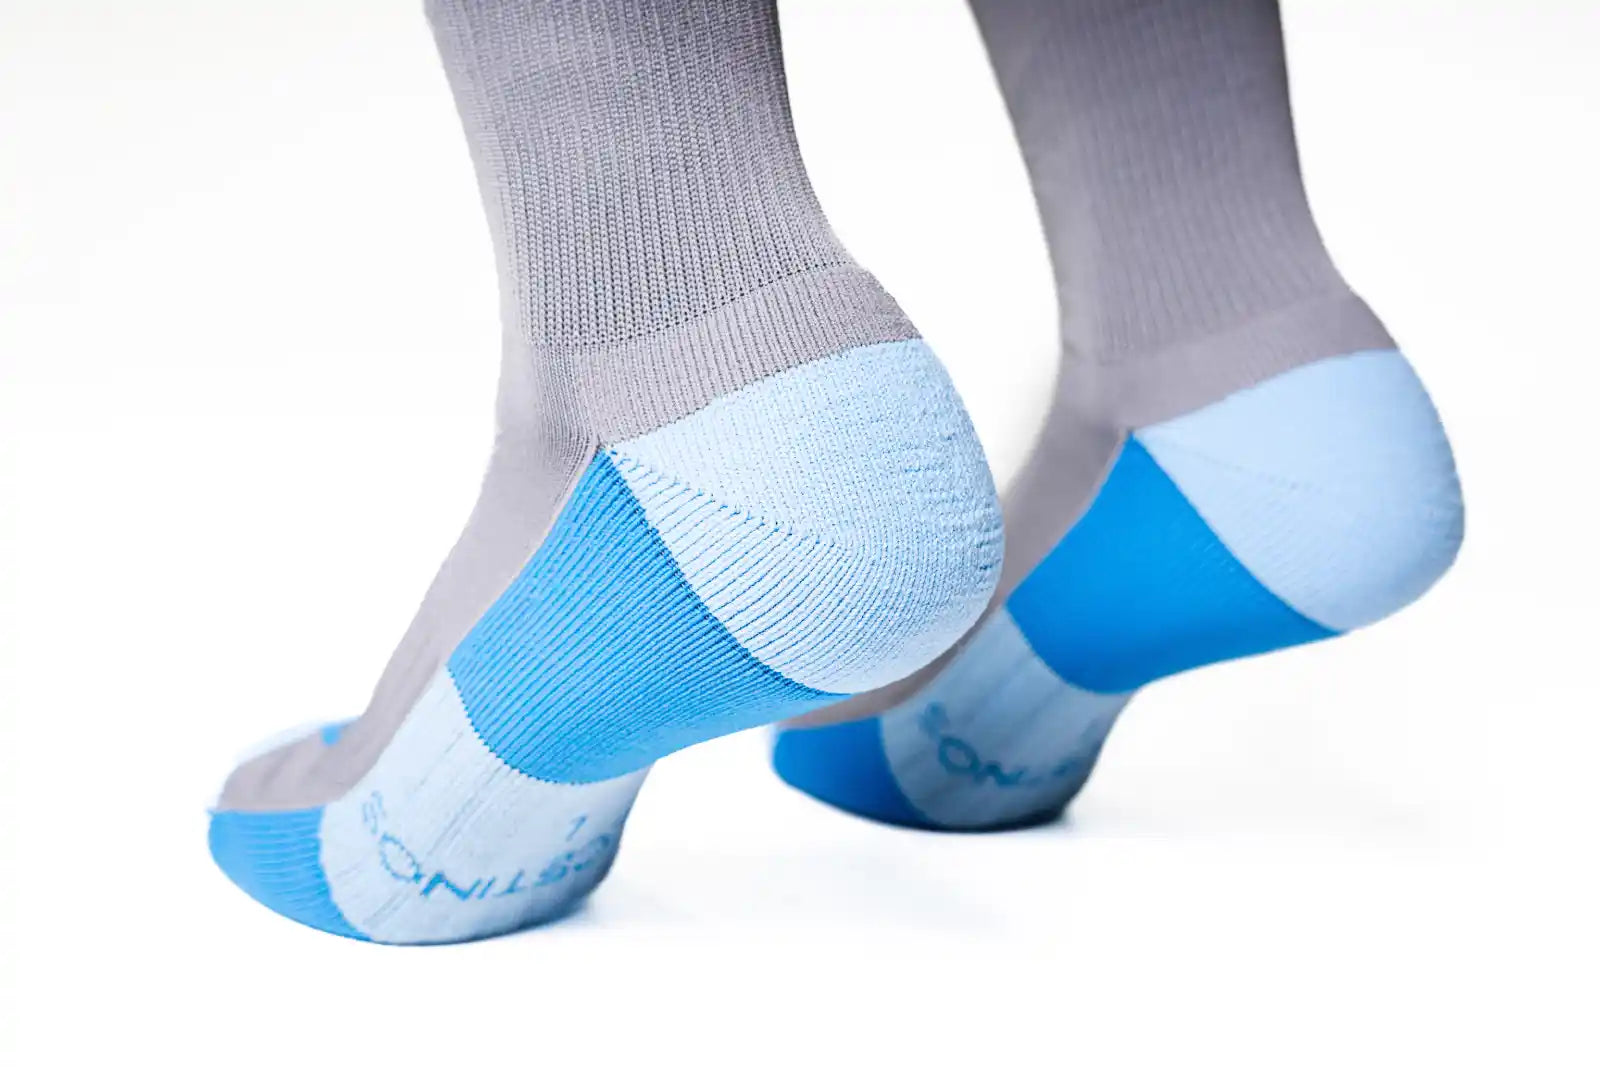 Calcetines compresivos acolchados del pie para quien trabaja todo el dia de pie